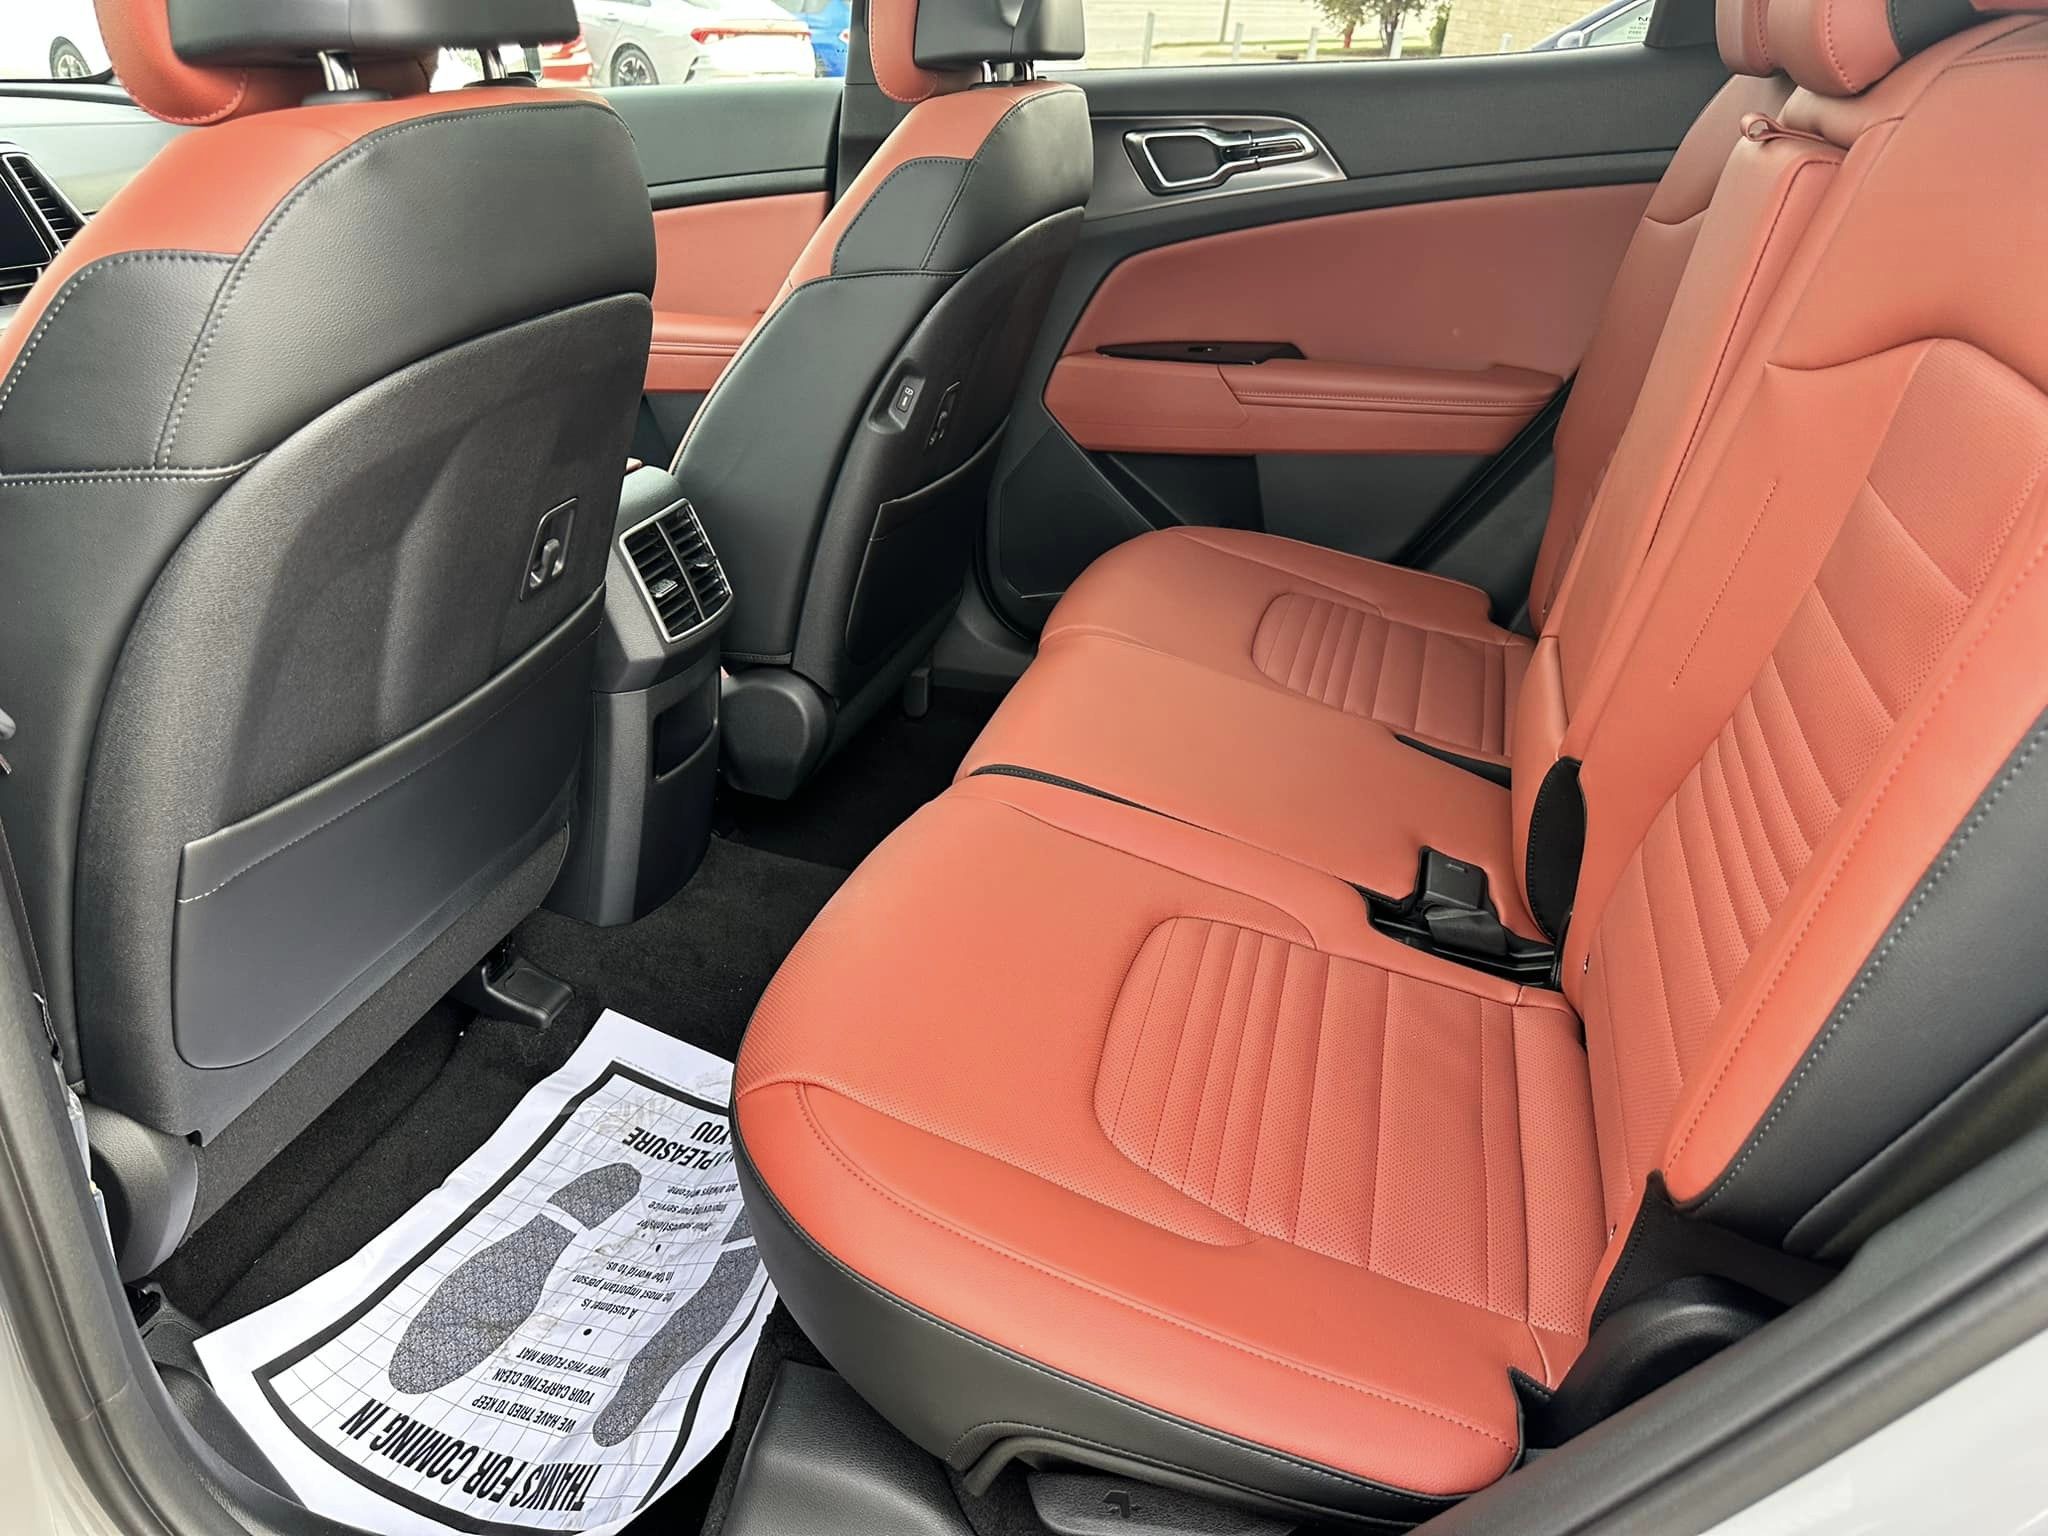 2024 Kia Sportage - Wolf Gray/Carmine Red Interior - SX Prestige Trim - Passenger Compartment